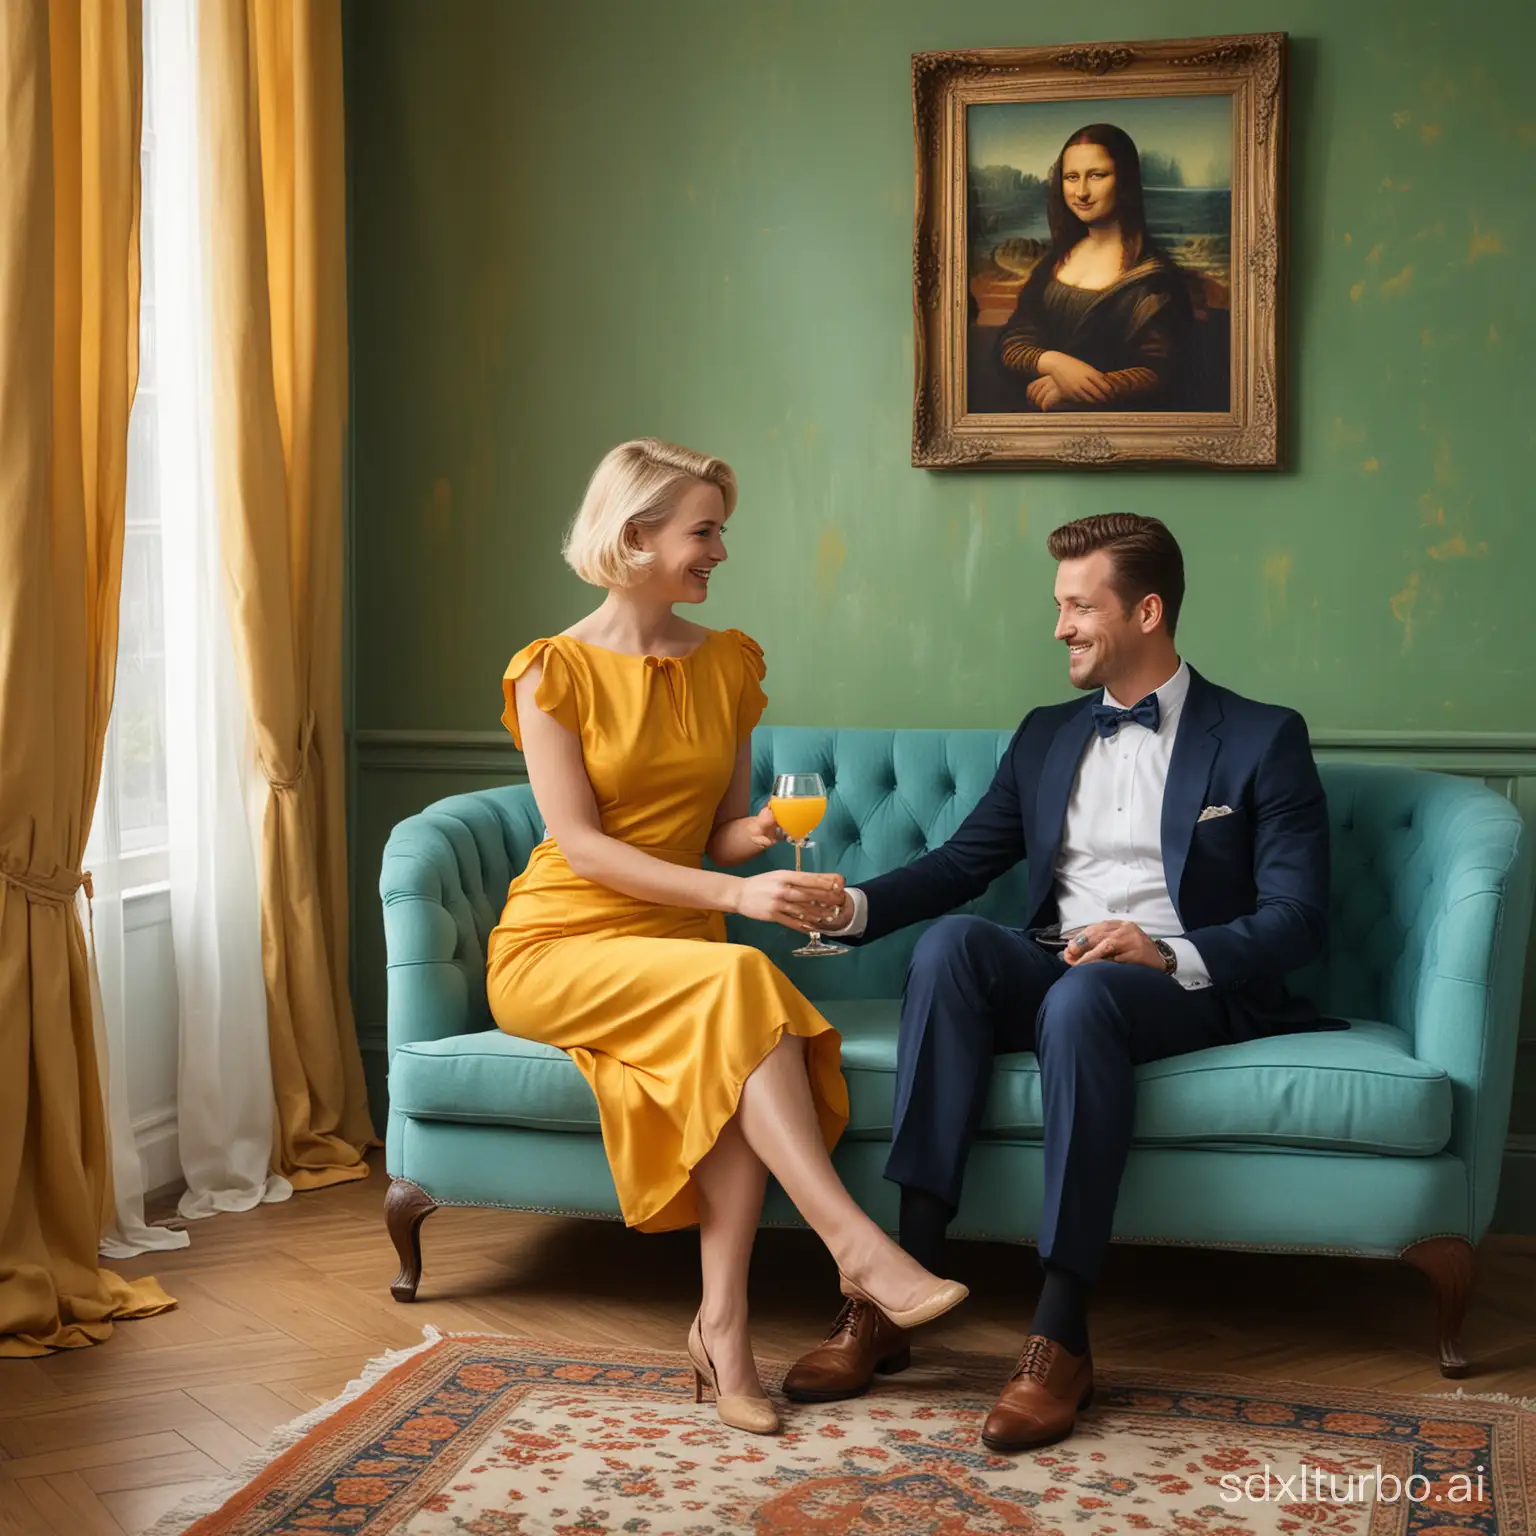 Elegant-Couple-Enjoying-Conversation-over-Orange-Juice-in-Stylish-Living-Room-Setting